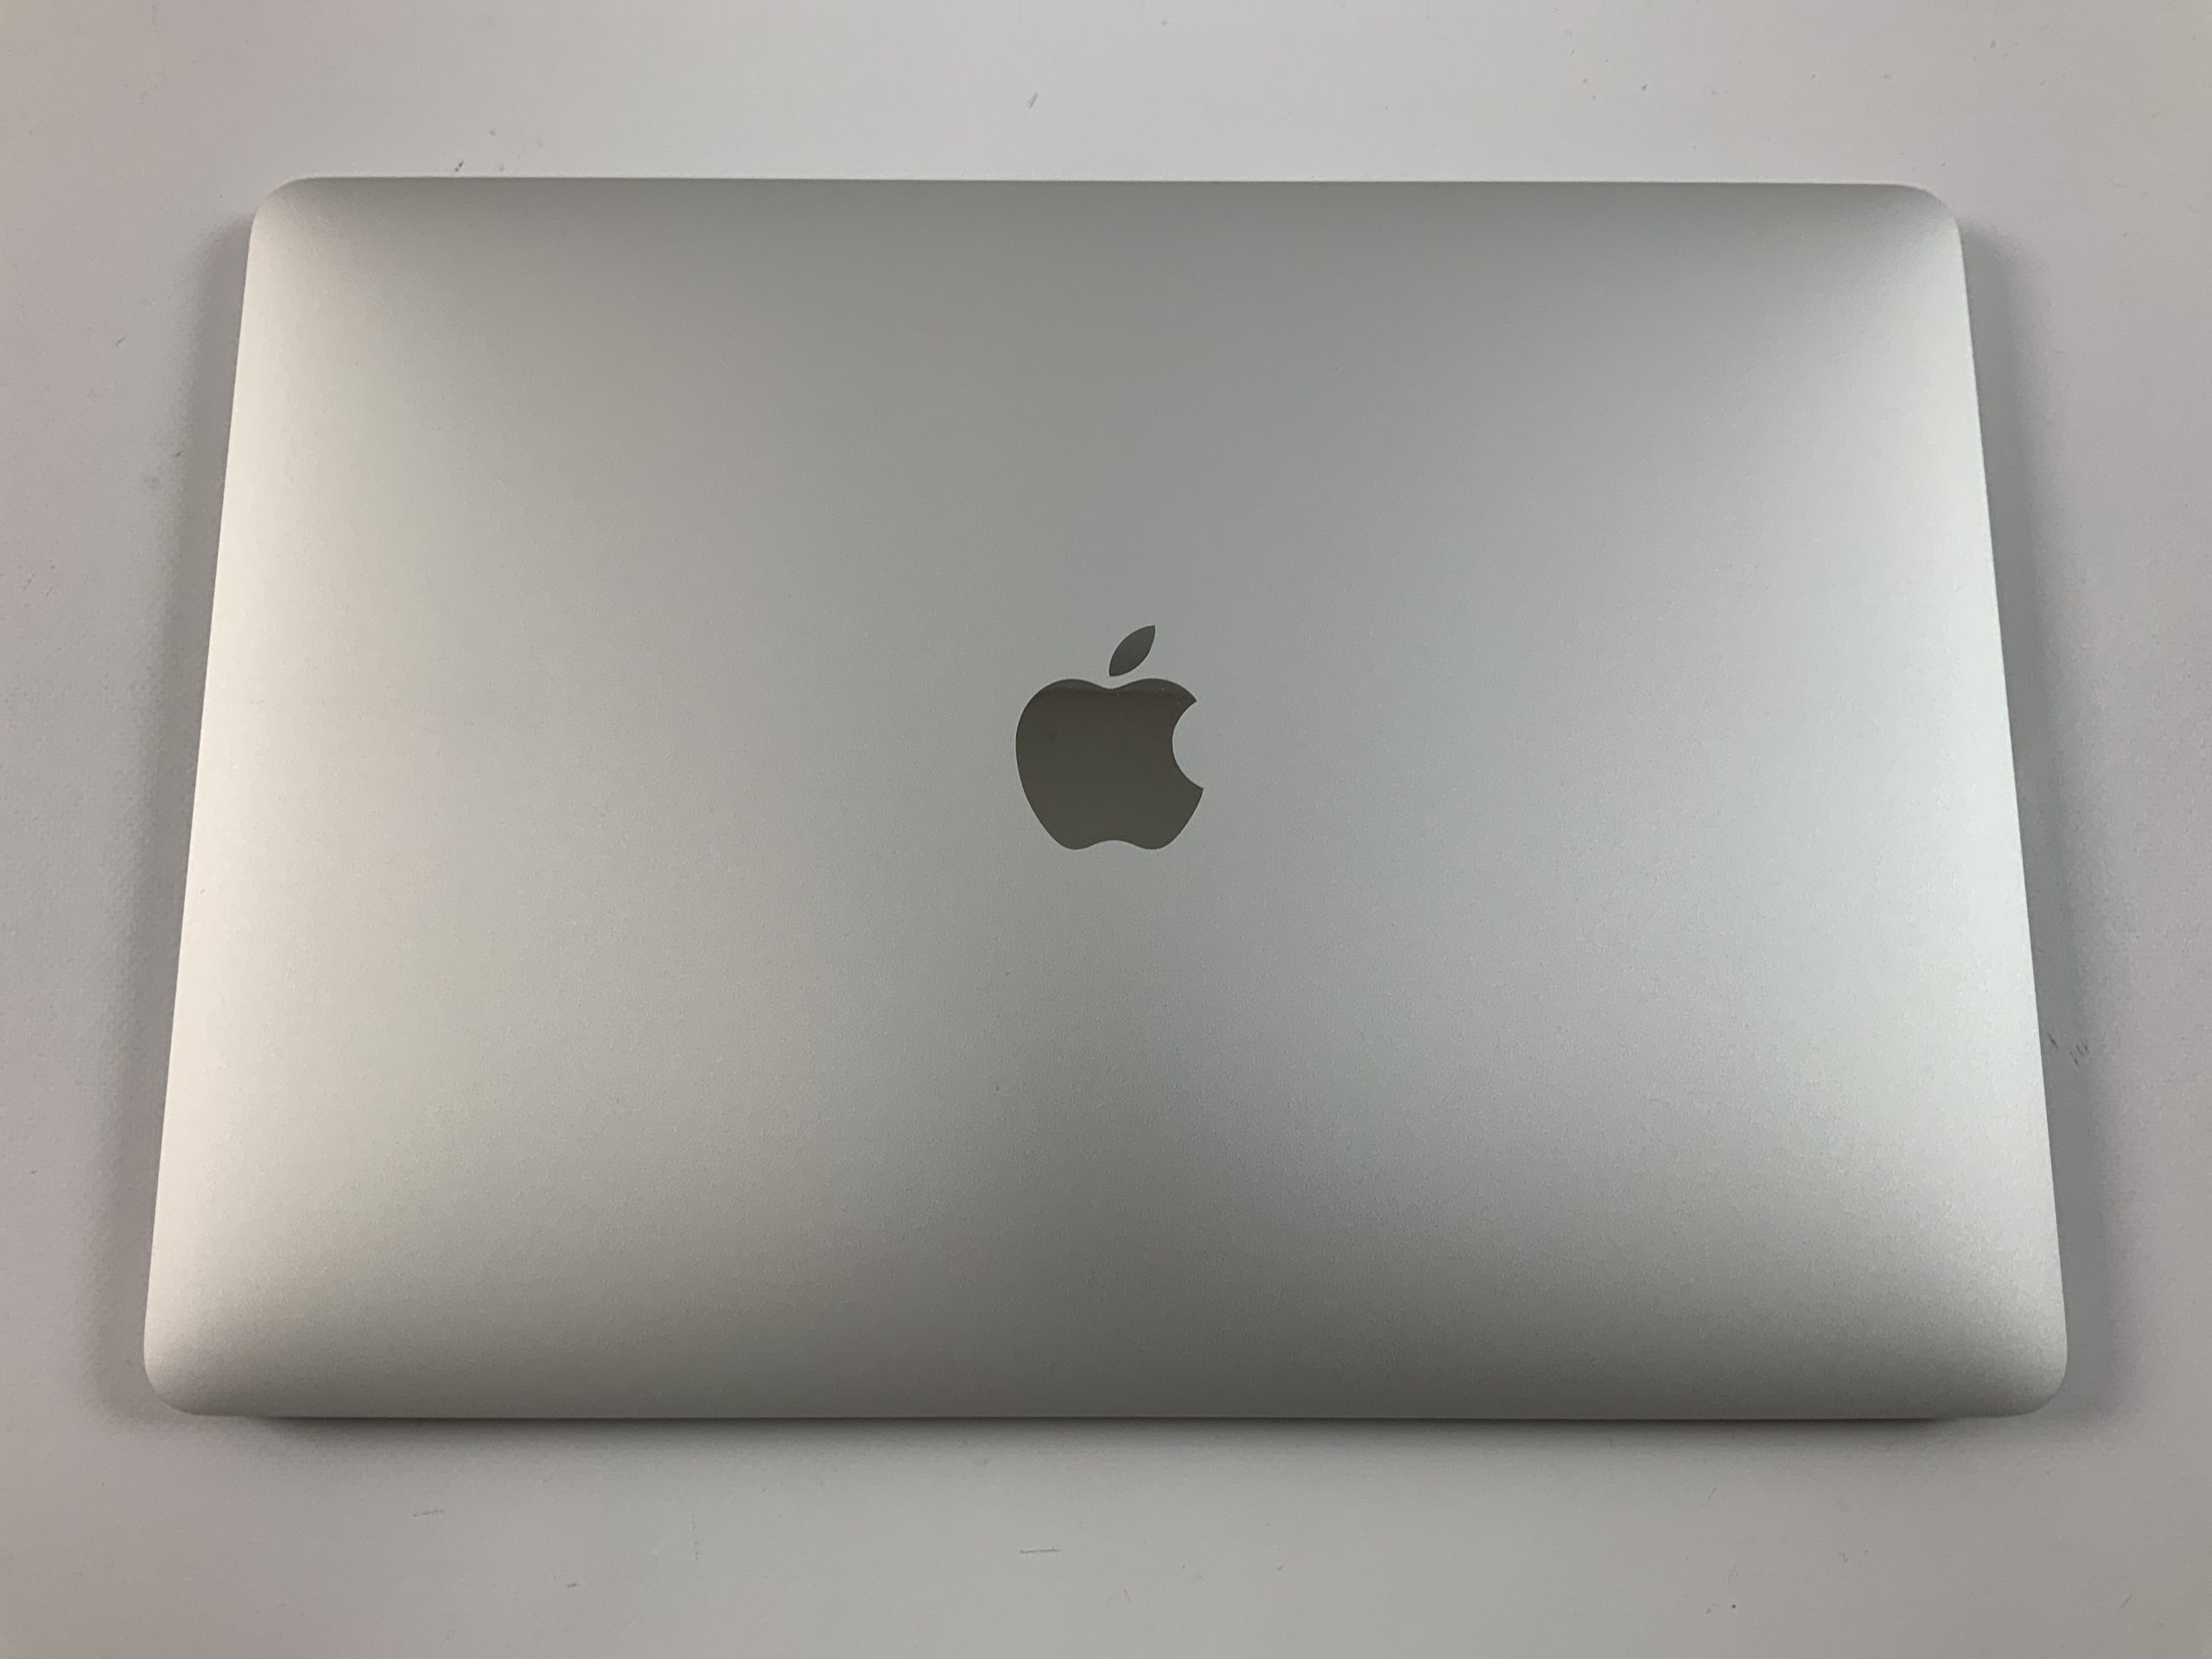 MacBook Pro 13" 4TBT Mid 2019 (Intel Quad-Core i5 2.4 GHz 8 GB RAM 256 GB SSD), Silver, Intel Quad-Core i5 2.4 GHz, 8 GB RAM, 256 GB SSD, bild 2